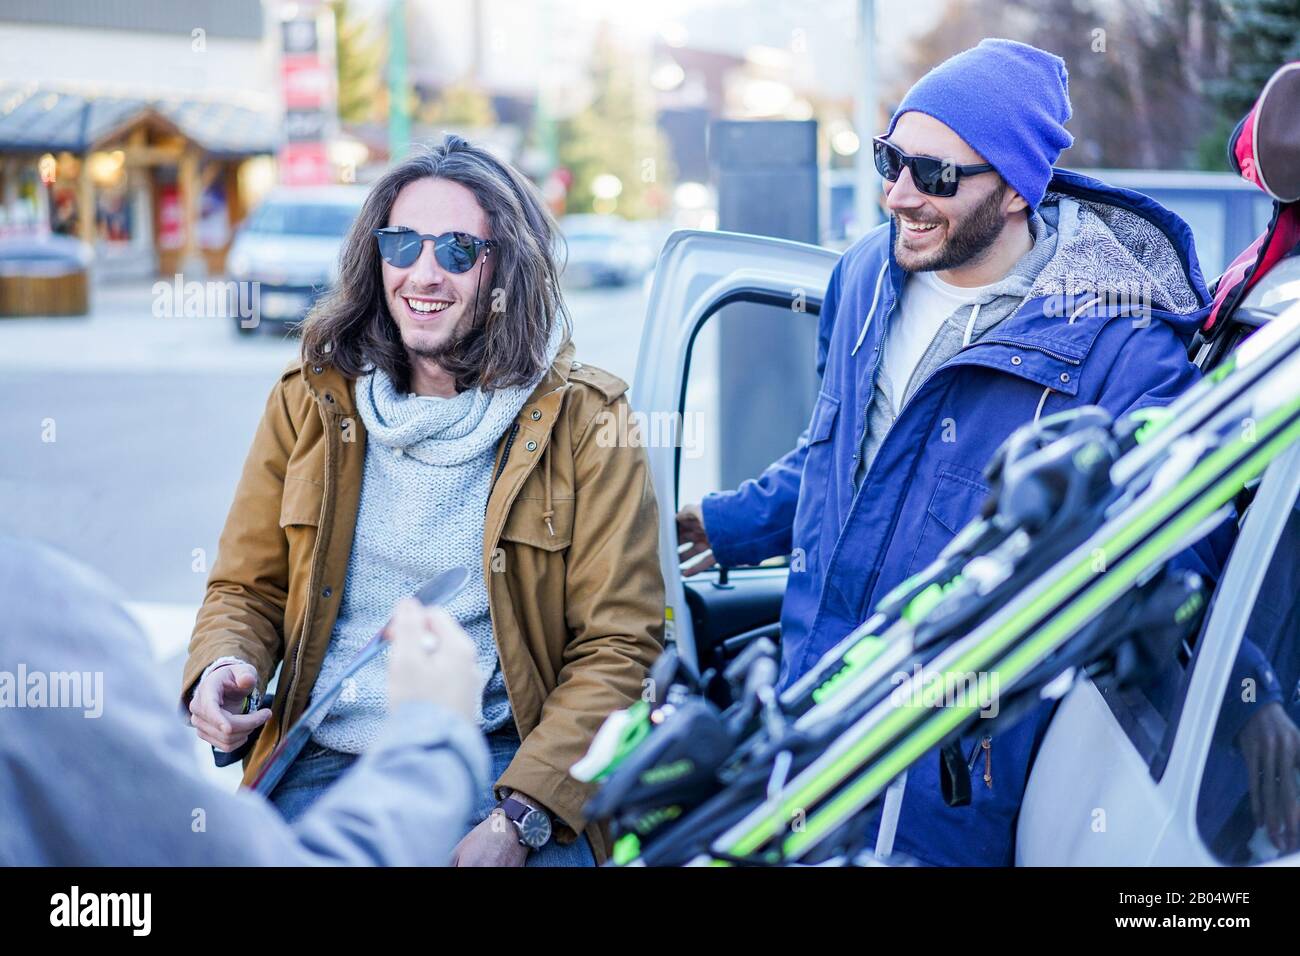 Junge Freunde kamen im Winterurlaubsdorf mit Himmel und Snowboards an - Glückliche Skifahrer, die Spaß haben, das Auto zu entladen - Extremsport, Urlaub und f Stockfoto